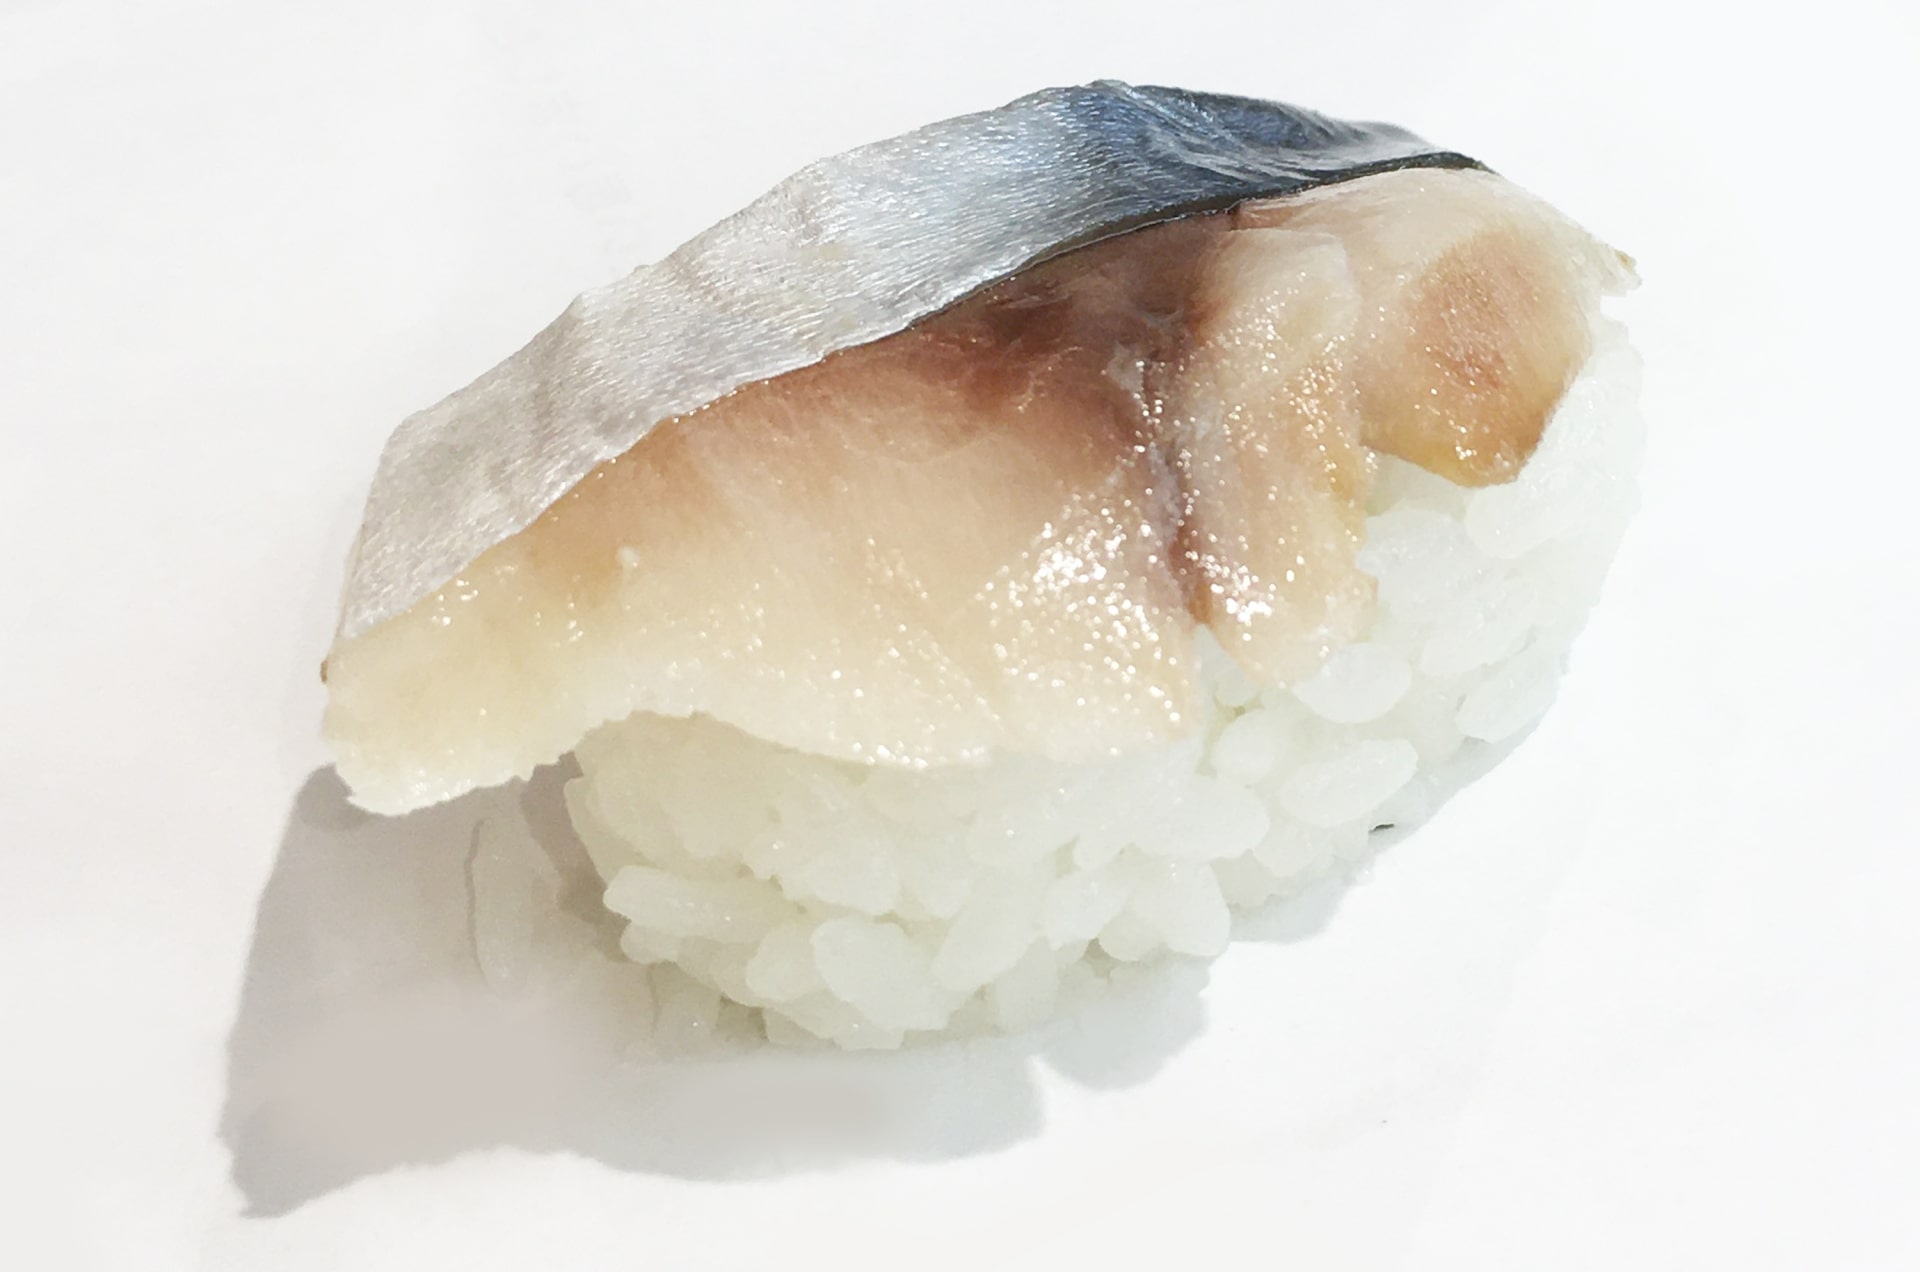 saba sushi